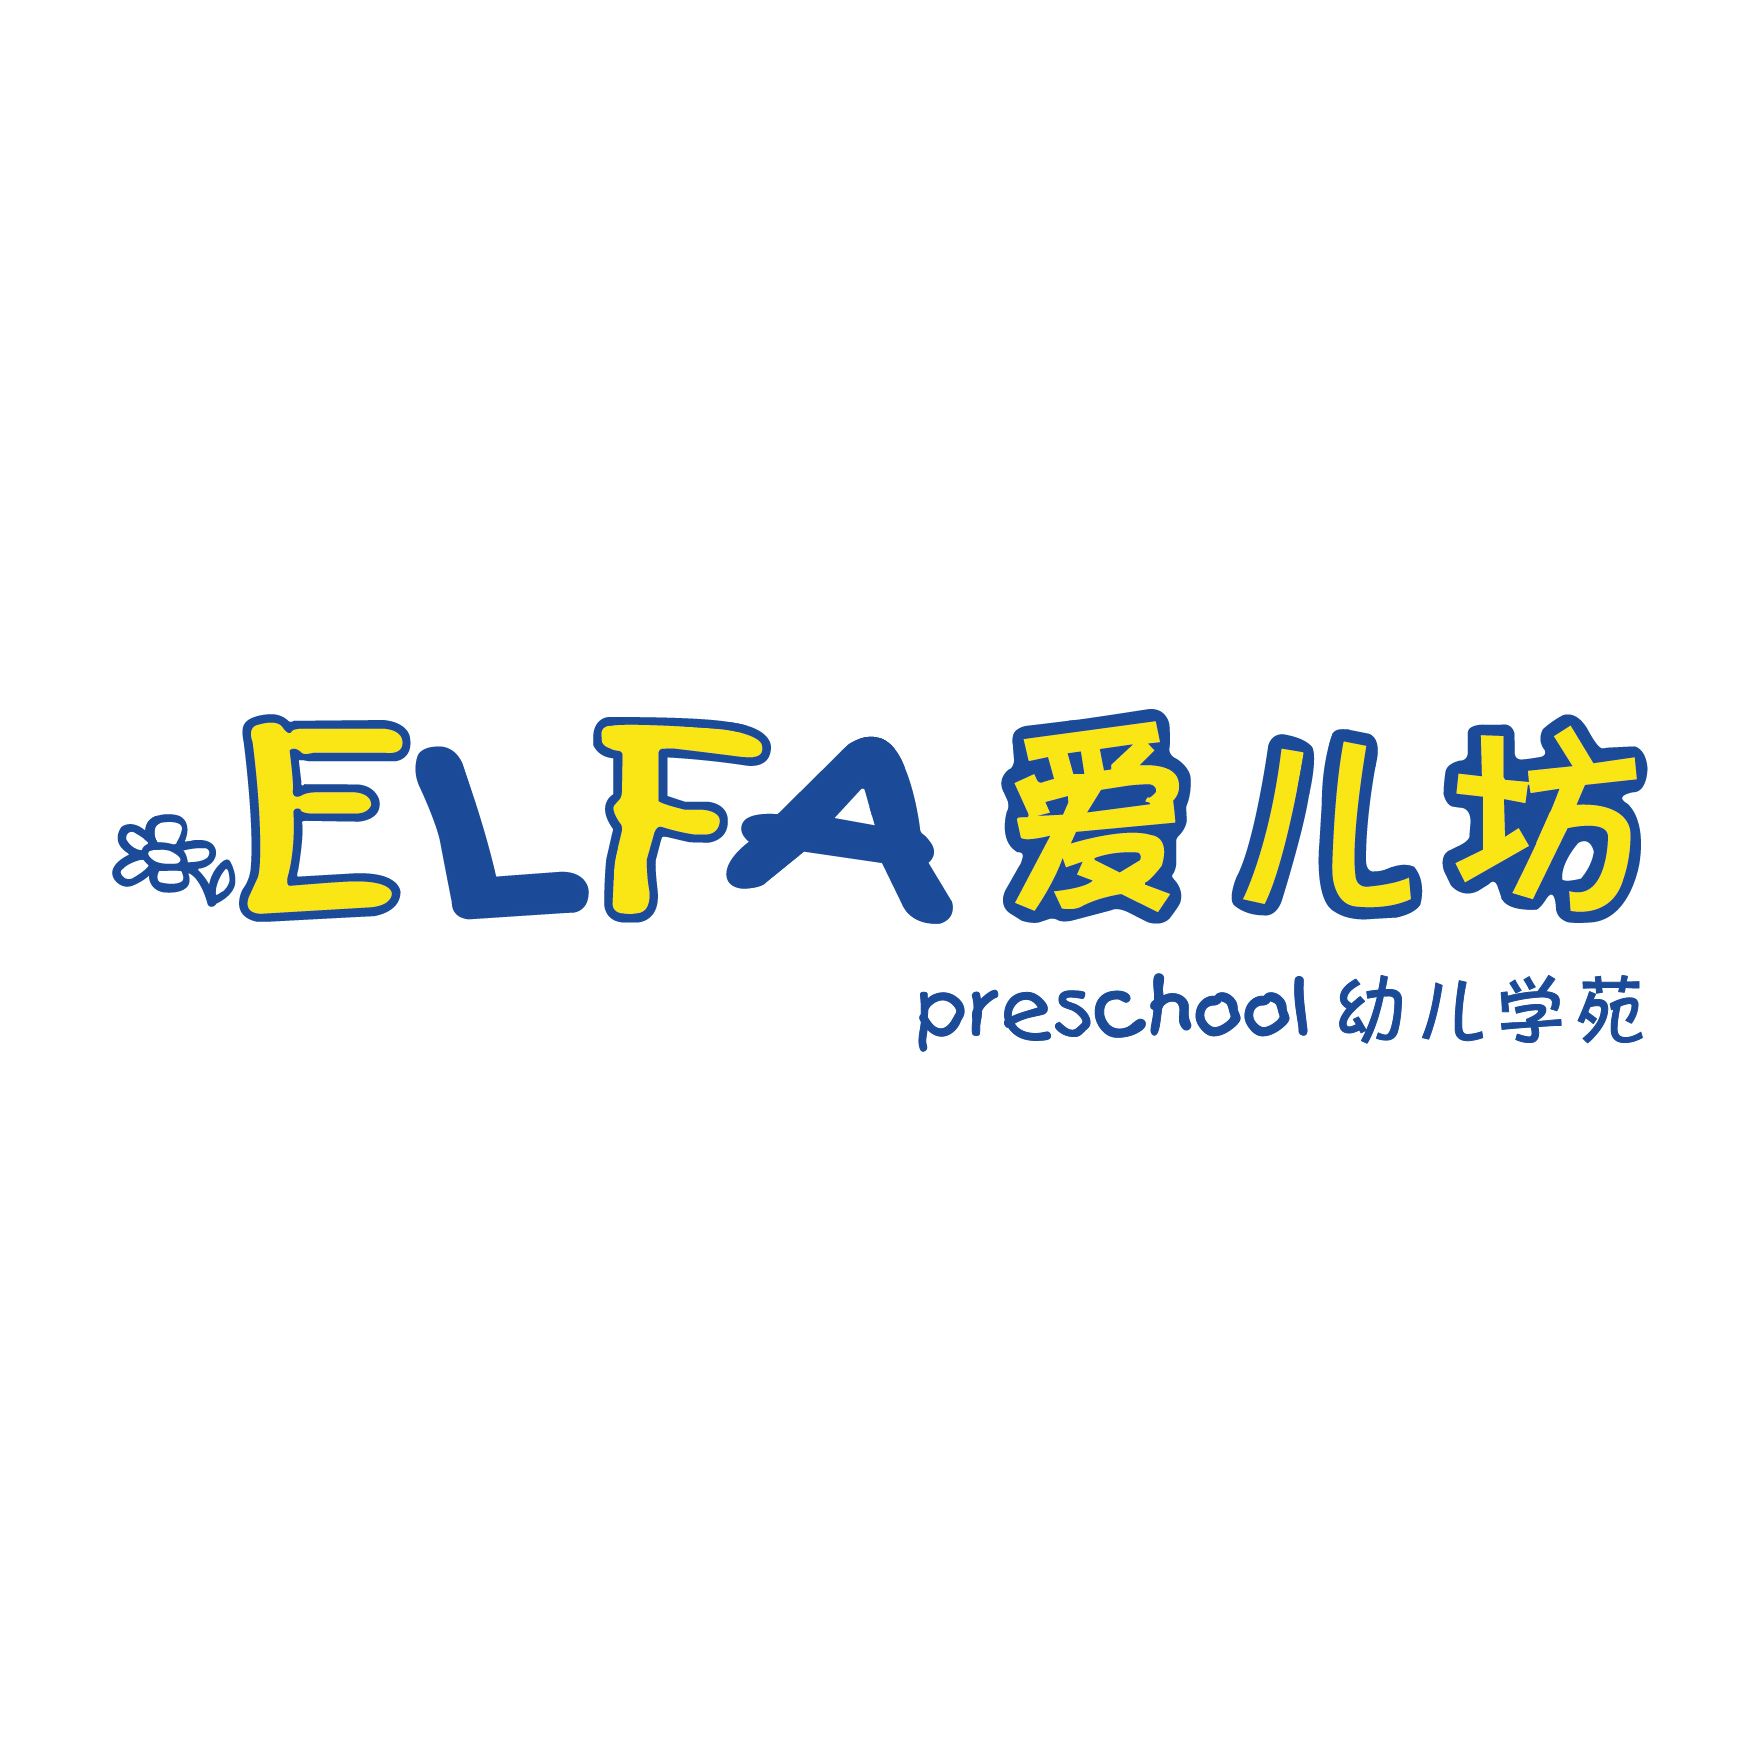 ELFA Preschool @ Hougang